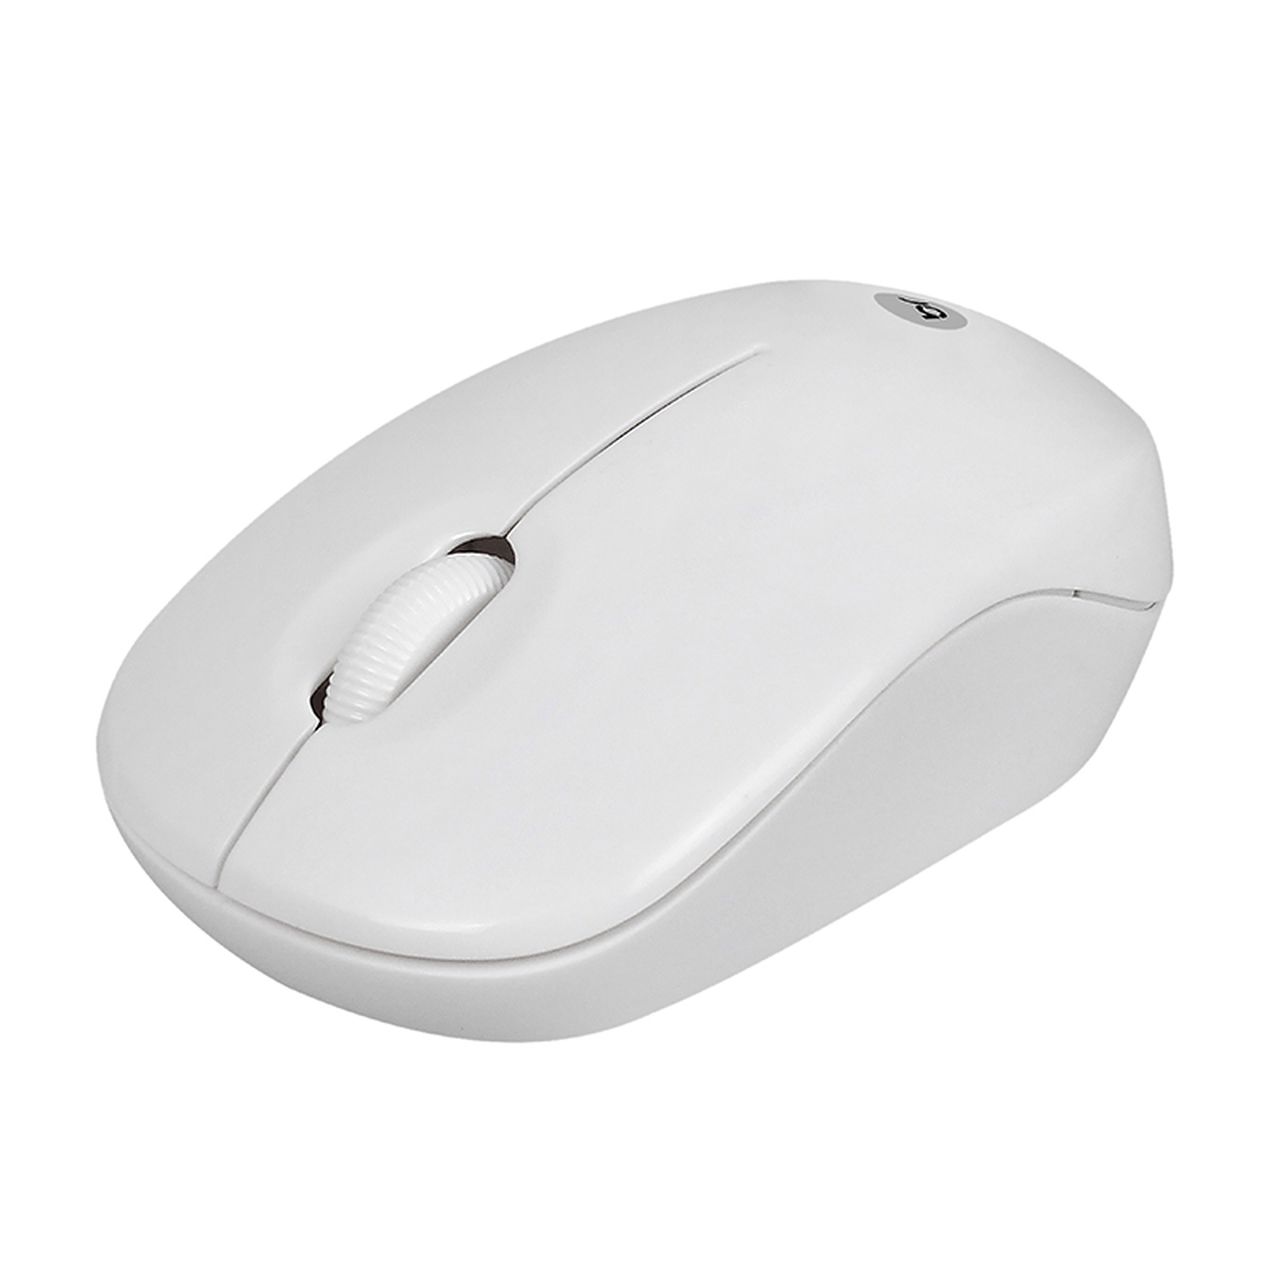 Mouse Sem Fio USB Branco 473 Bright - BRIGHT